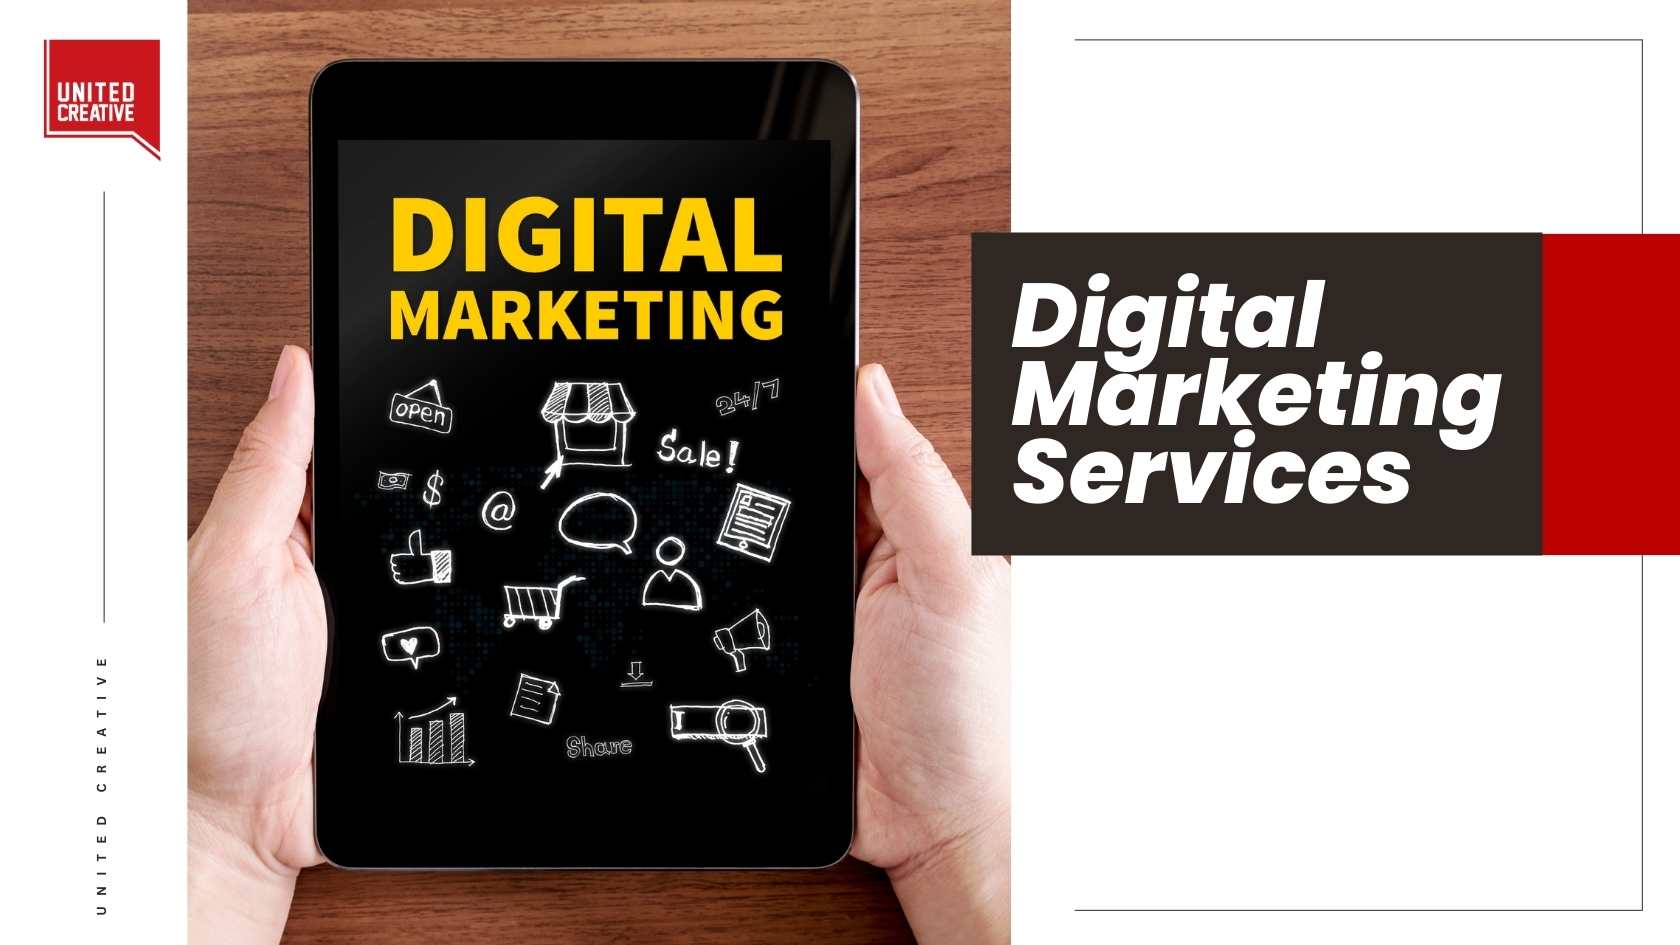 Digital Marketing Services - Apa Saja Jasanya